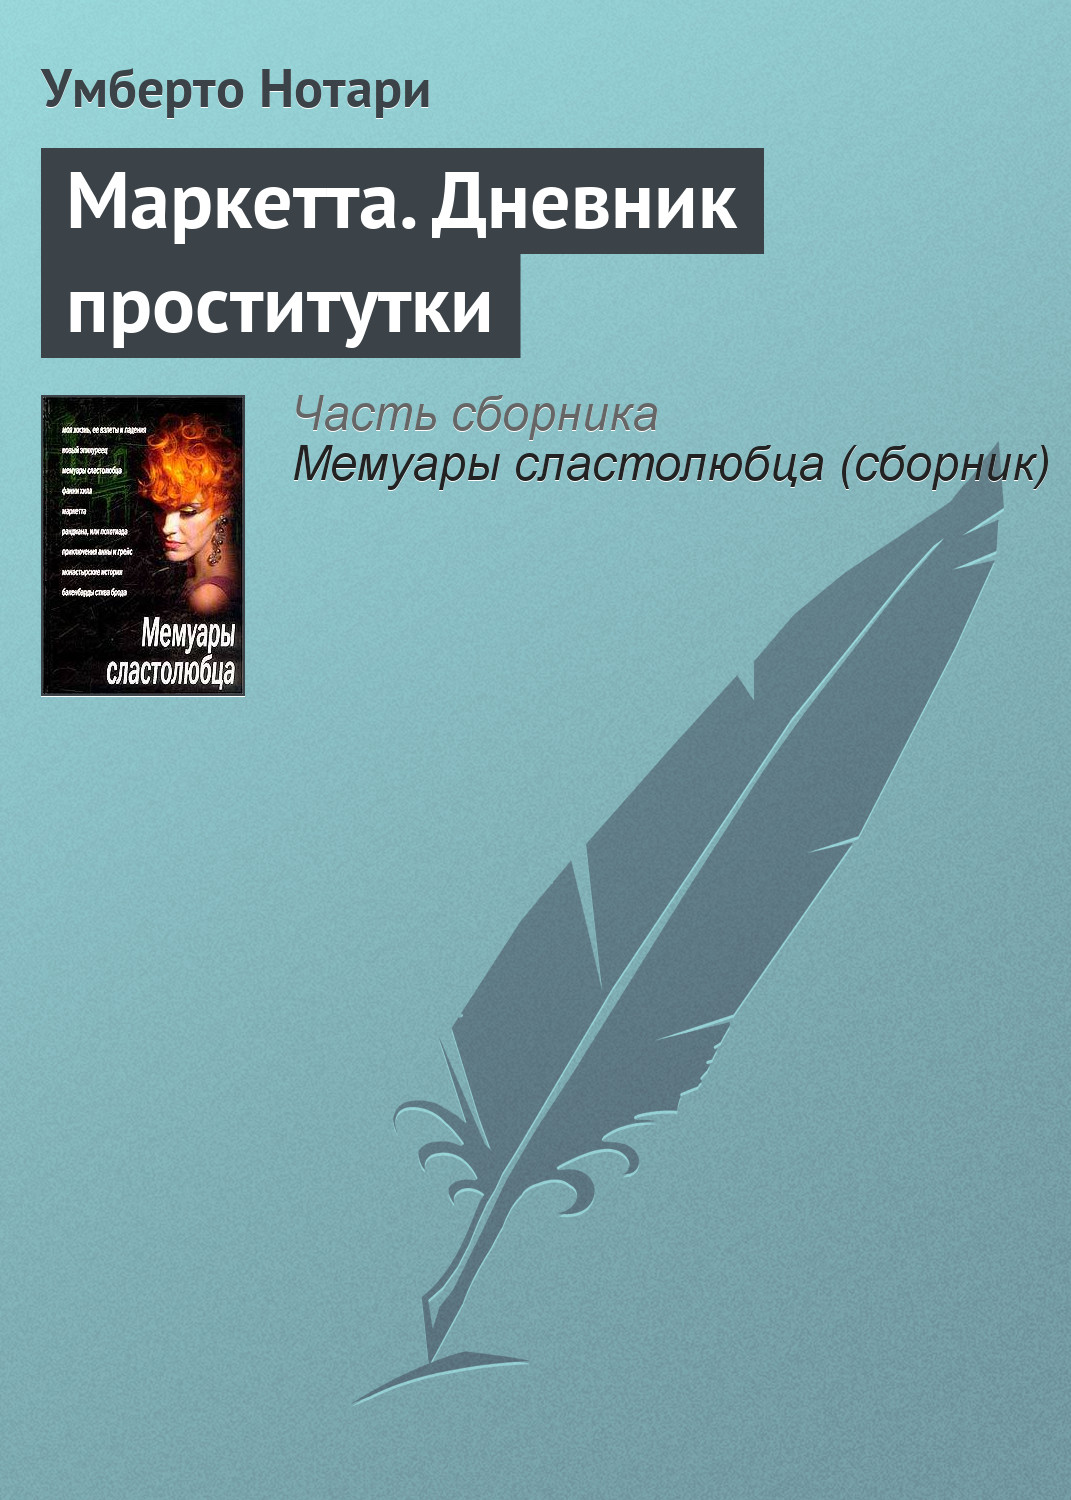 Исповедь проститутки, Татьяна Николаева – скачать книгу бесплатно fb2, epub, pdf на ЛитРес